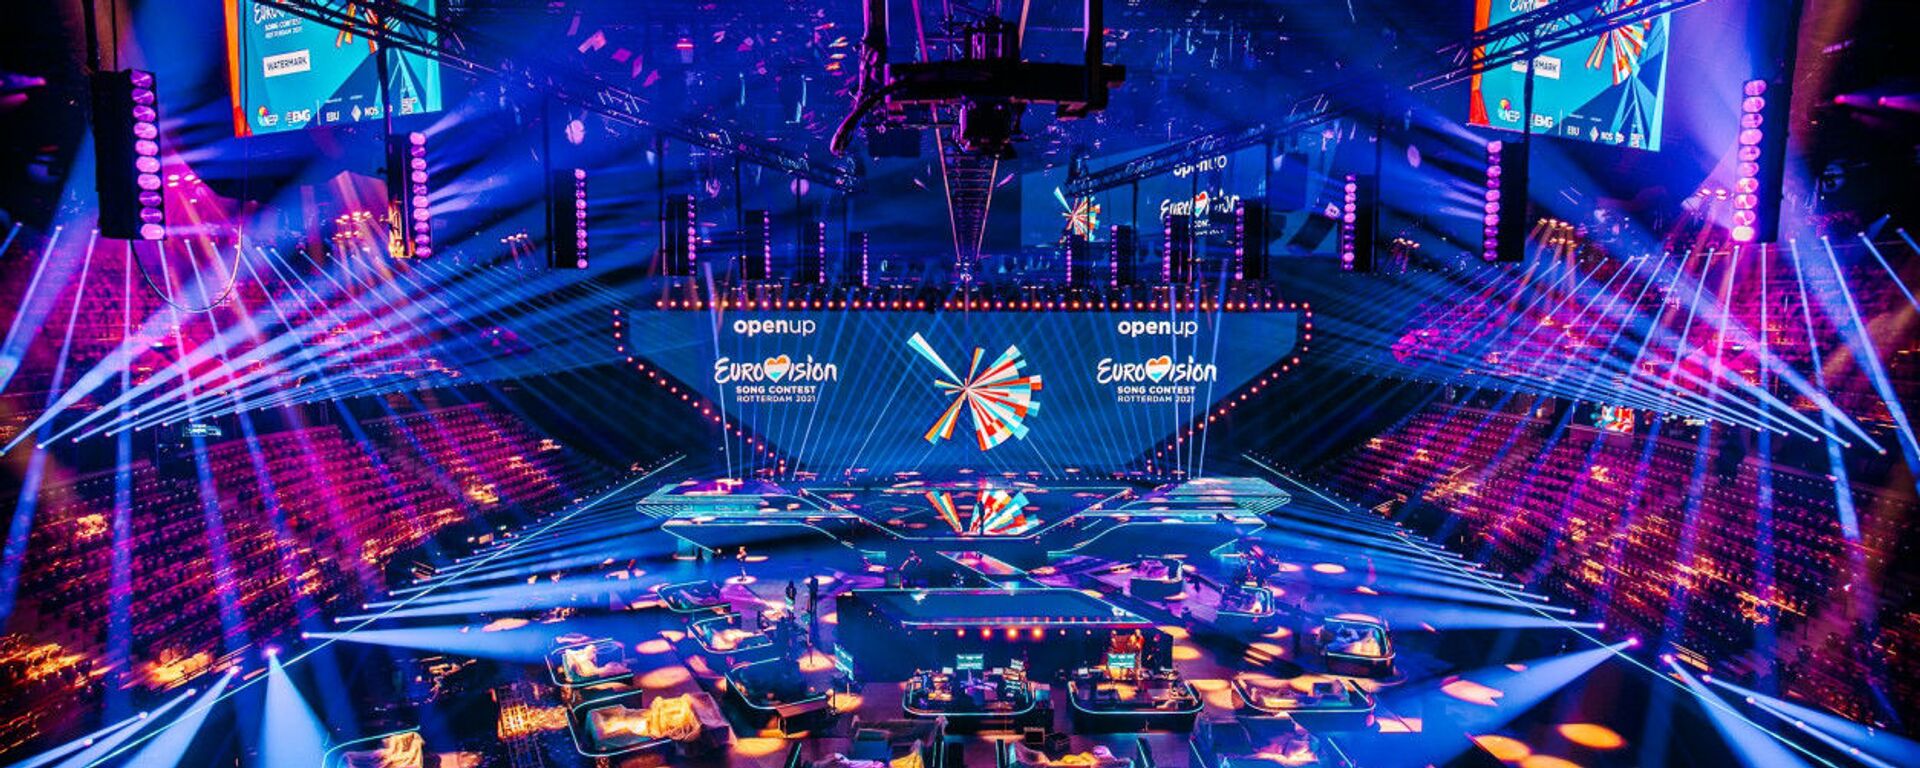 Сцена Евровидения-2021 концертного зала Ahoy в Роттердаме - Sputnik Азербайджан, 1920, 20.10.2021